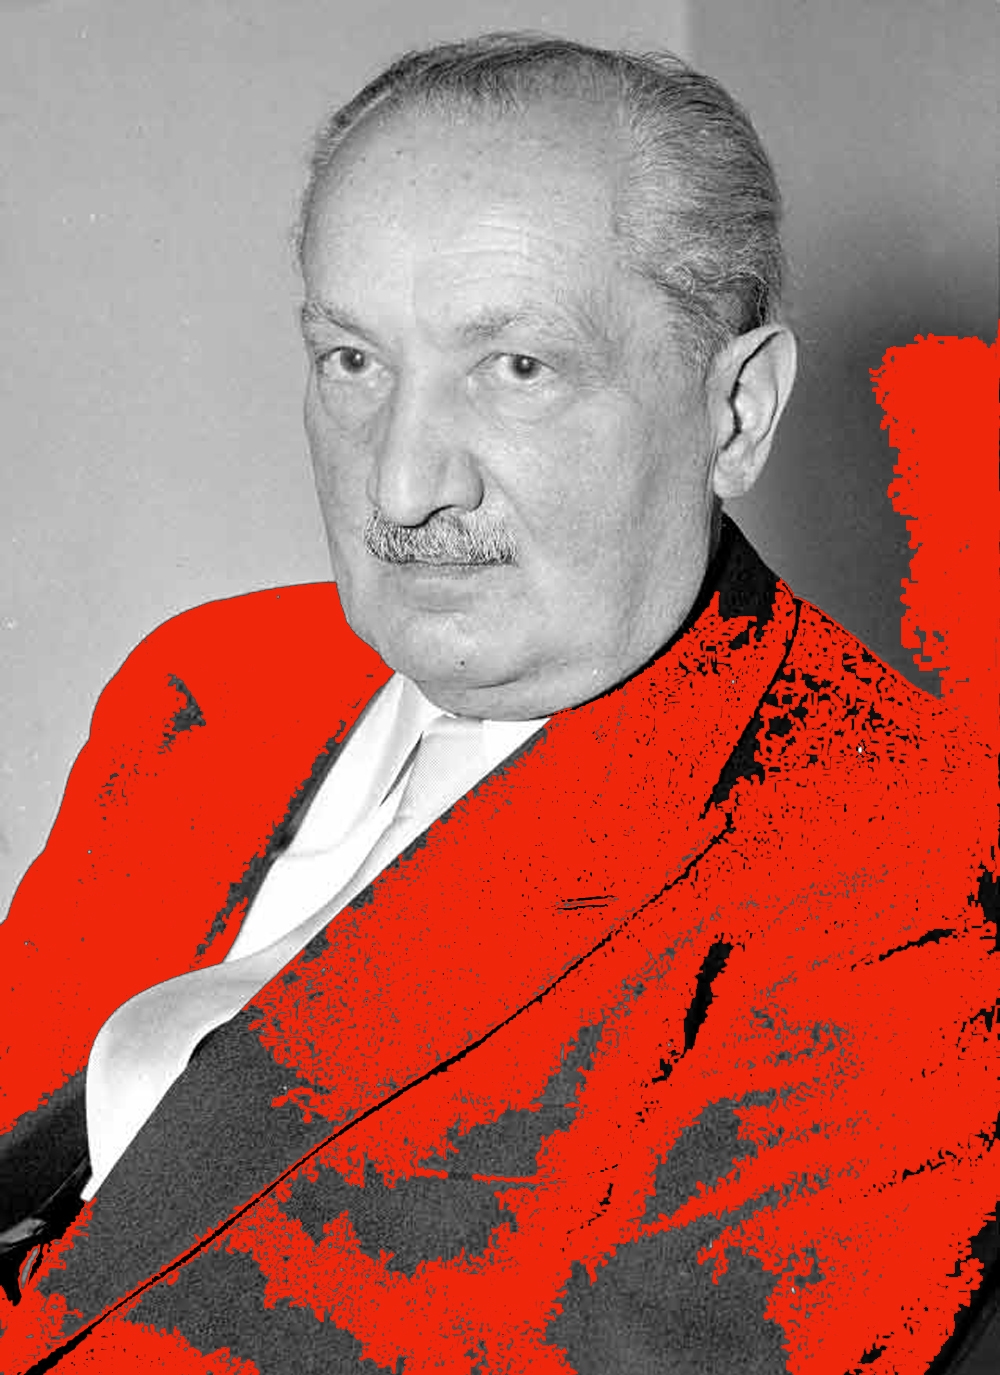 Martín Heidegger (1889-1976), simpatizante del nazismo y filósofo de alcurnia: contradicción insalvable. 